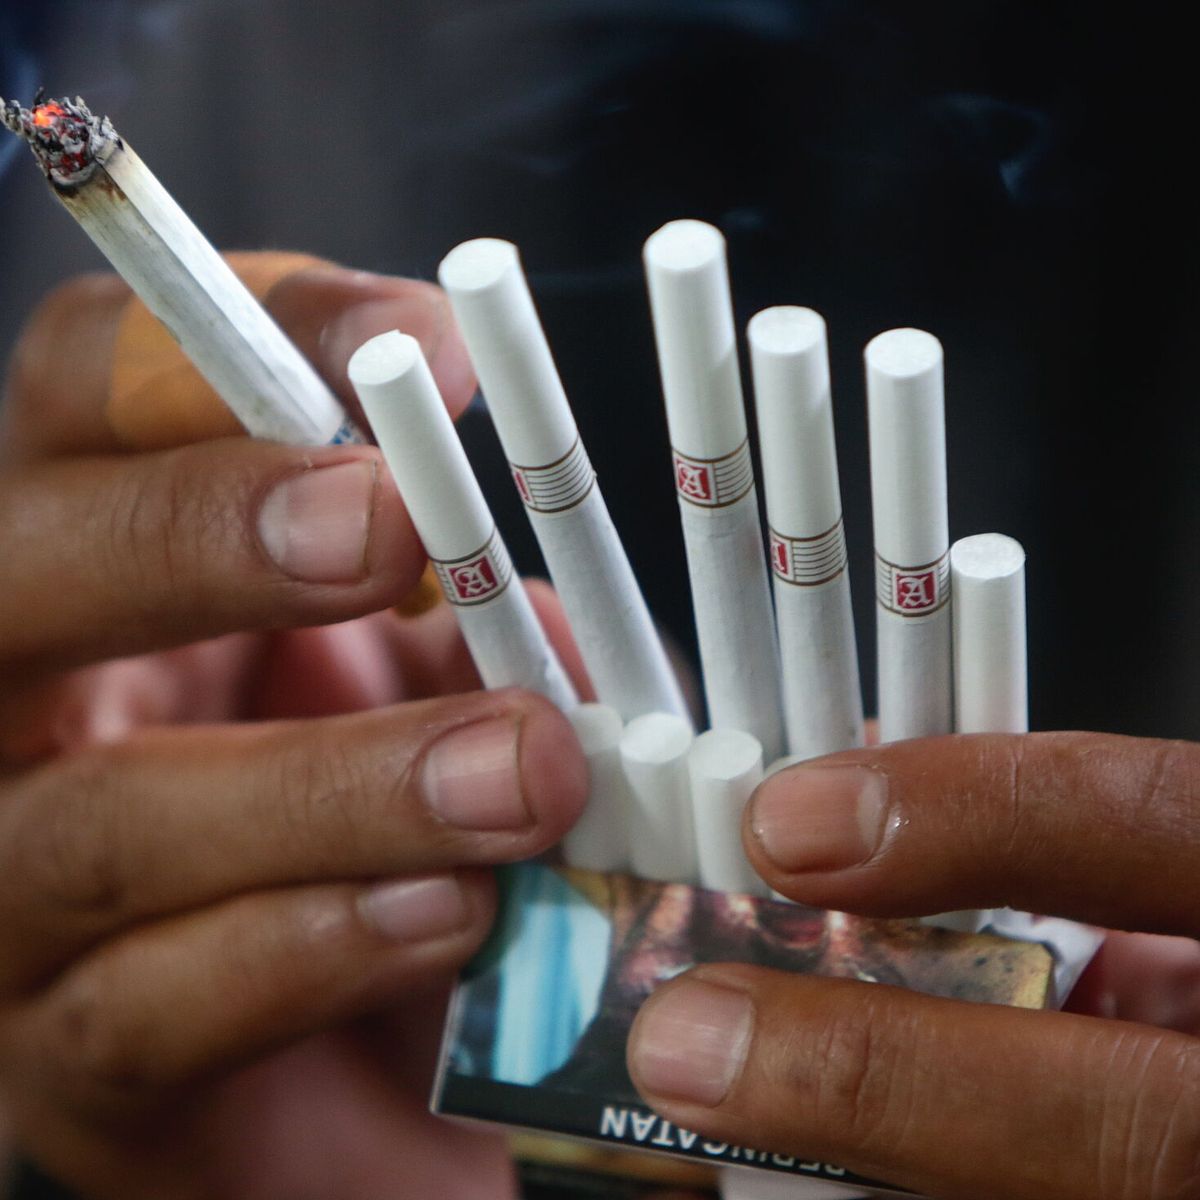 Recigarum, el nuevo fármaco para dejar de fumar en 25 días financiado por  Sanidad